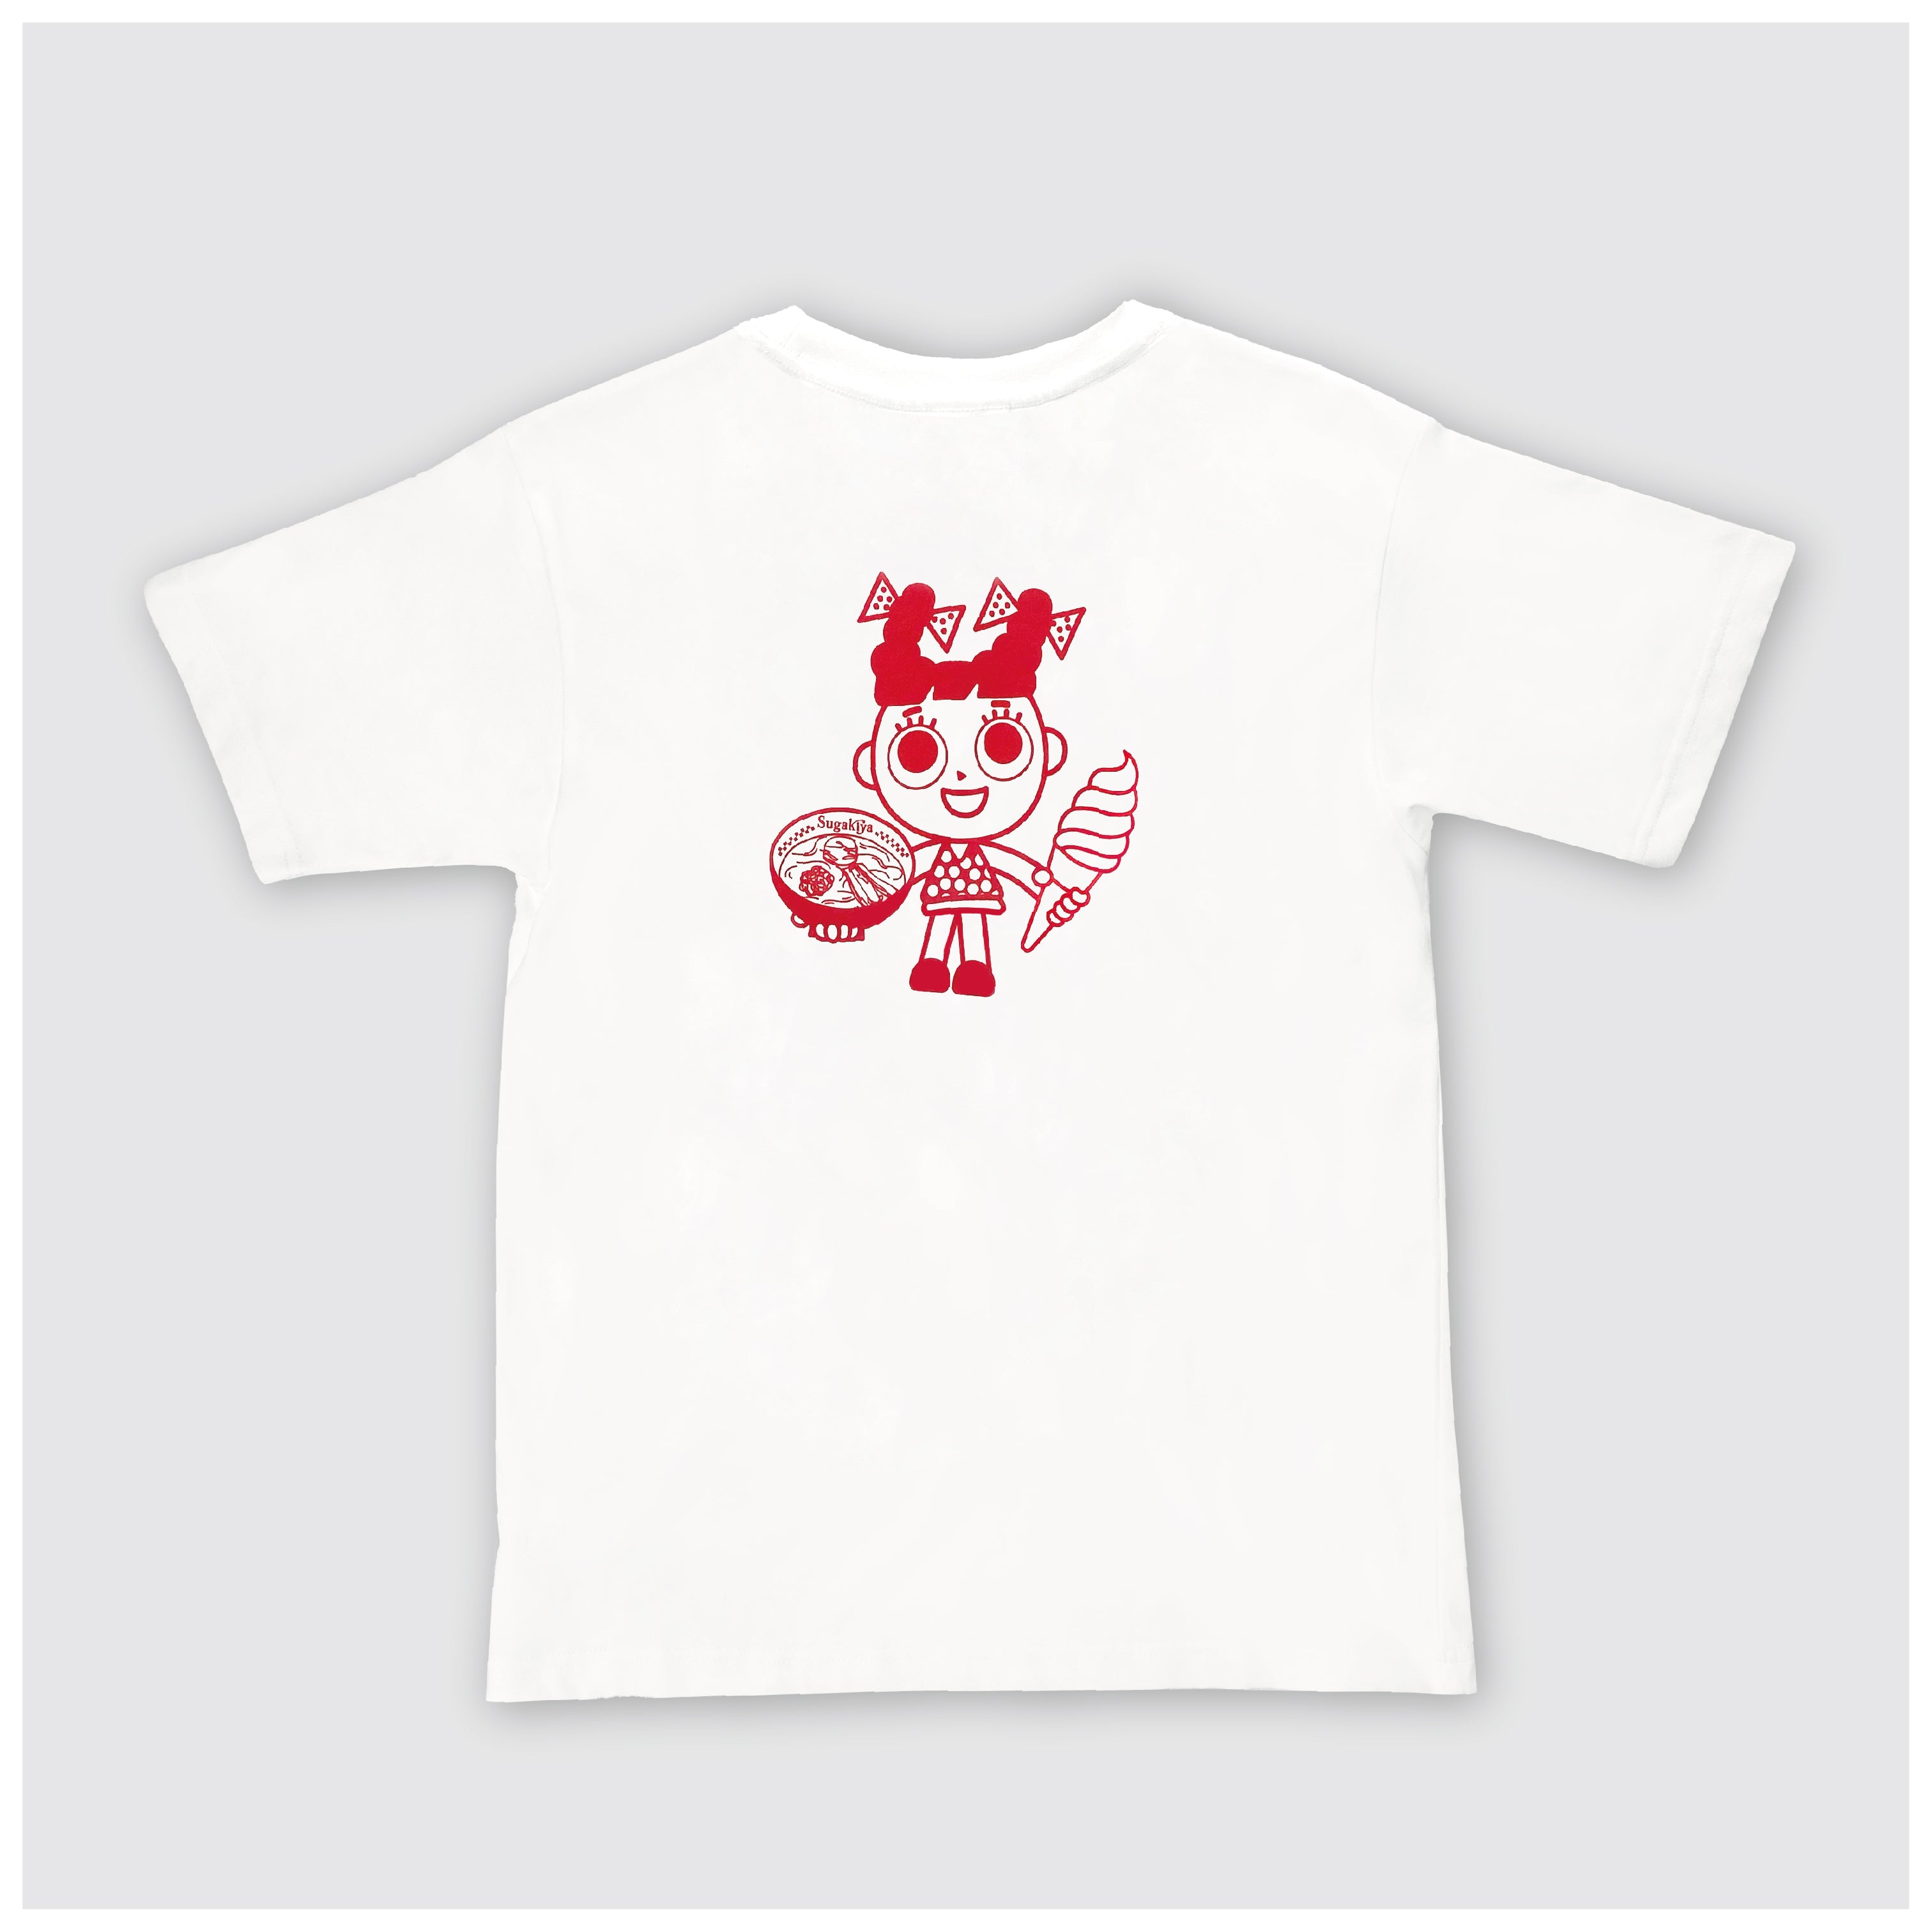 Sugakiya T-shirt